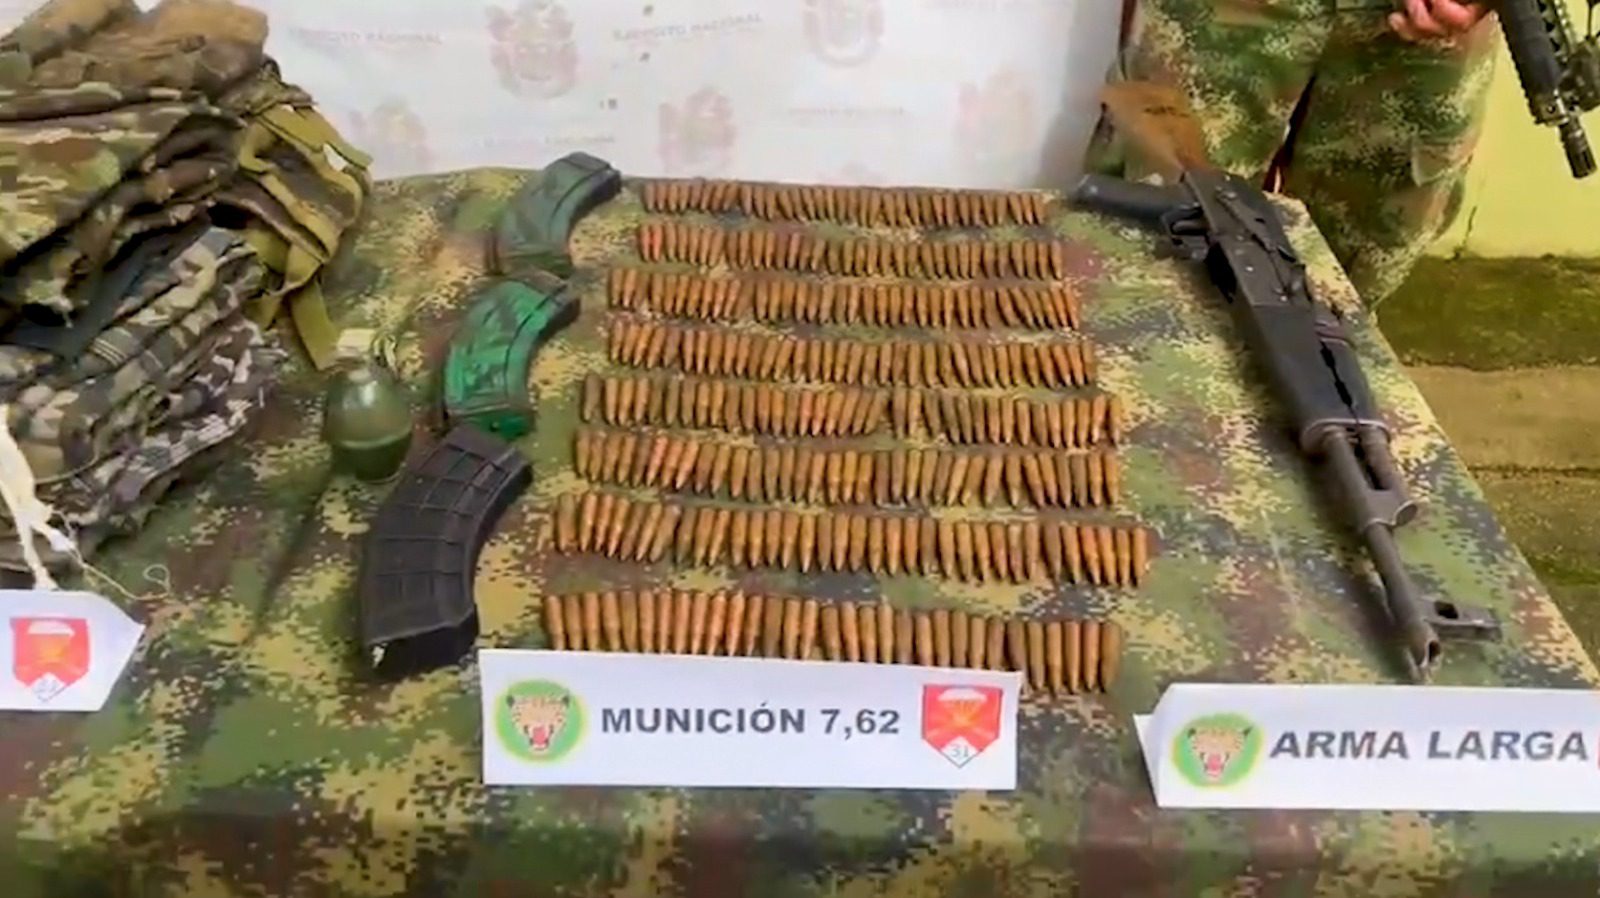 Ejército halló depósito con material de guerra en zona rural de El Bagre